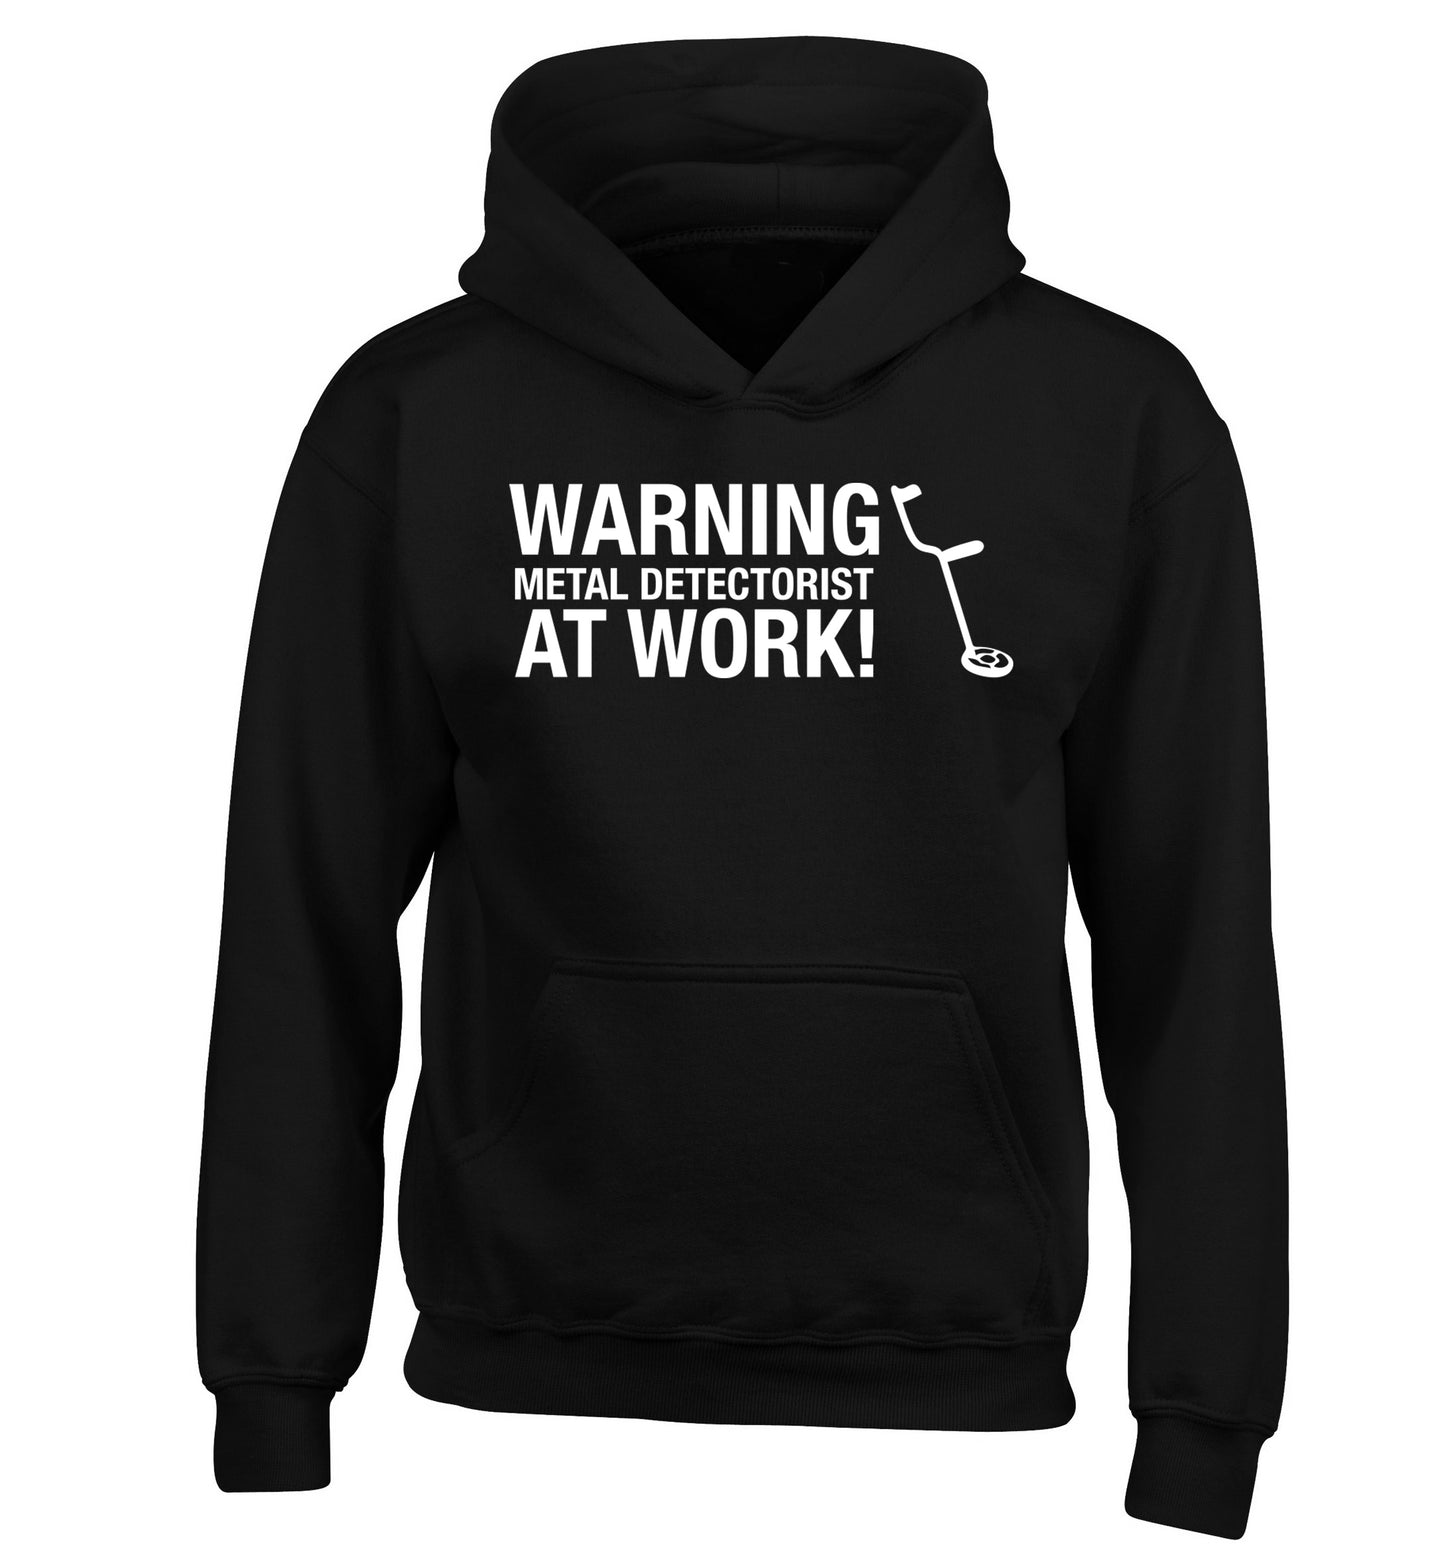 Warning metal detectorist at work! children's black hoodie 12-13 Years